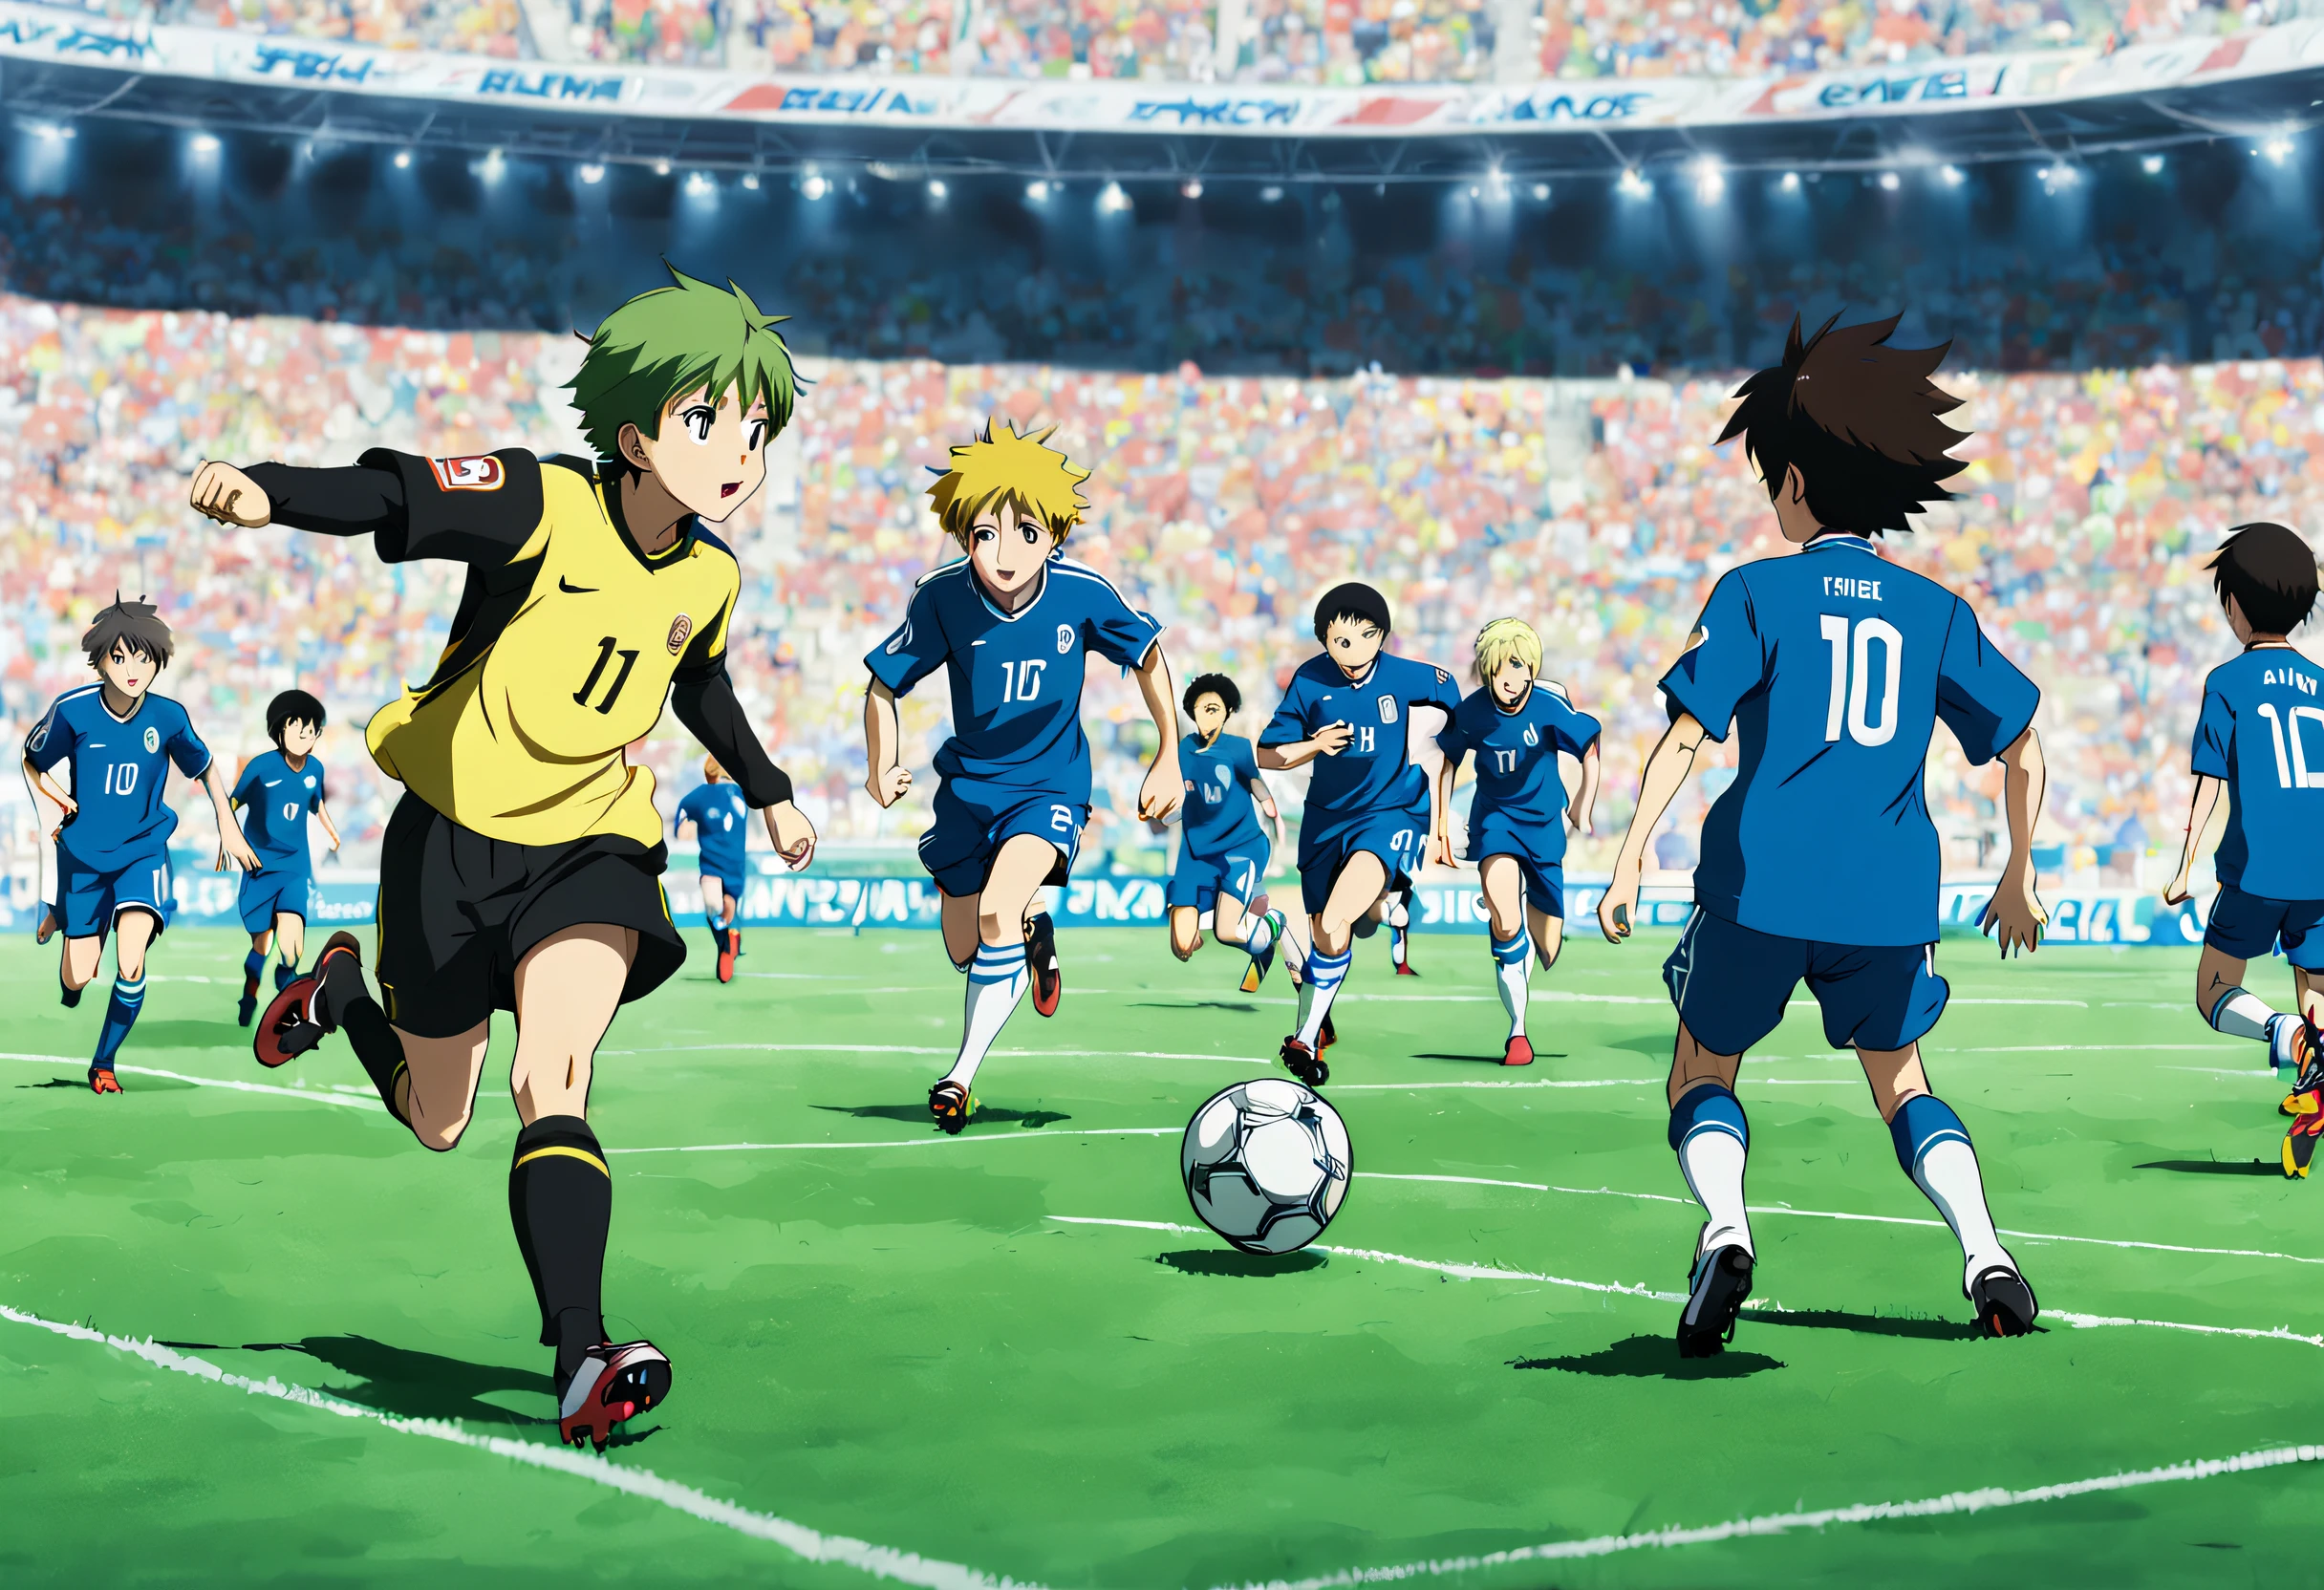 Anime Cute Girl Soccer Player Stock Illustration - Illustration of goal,  action: 291478321